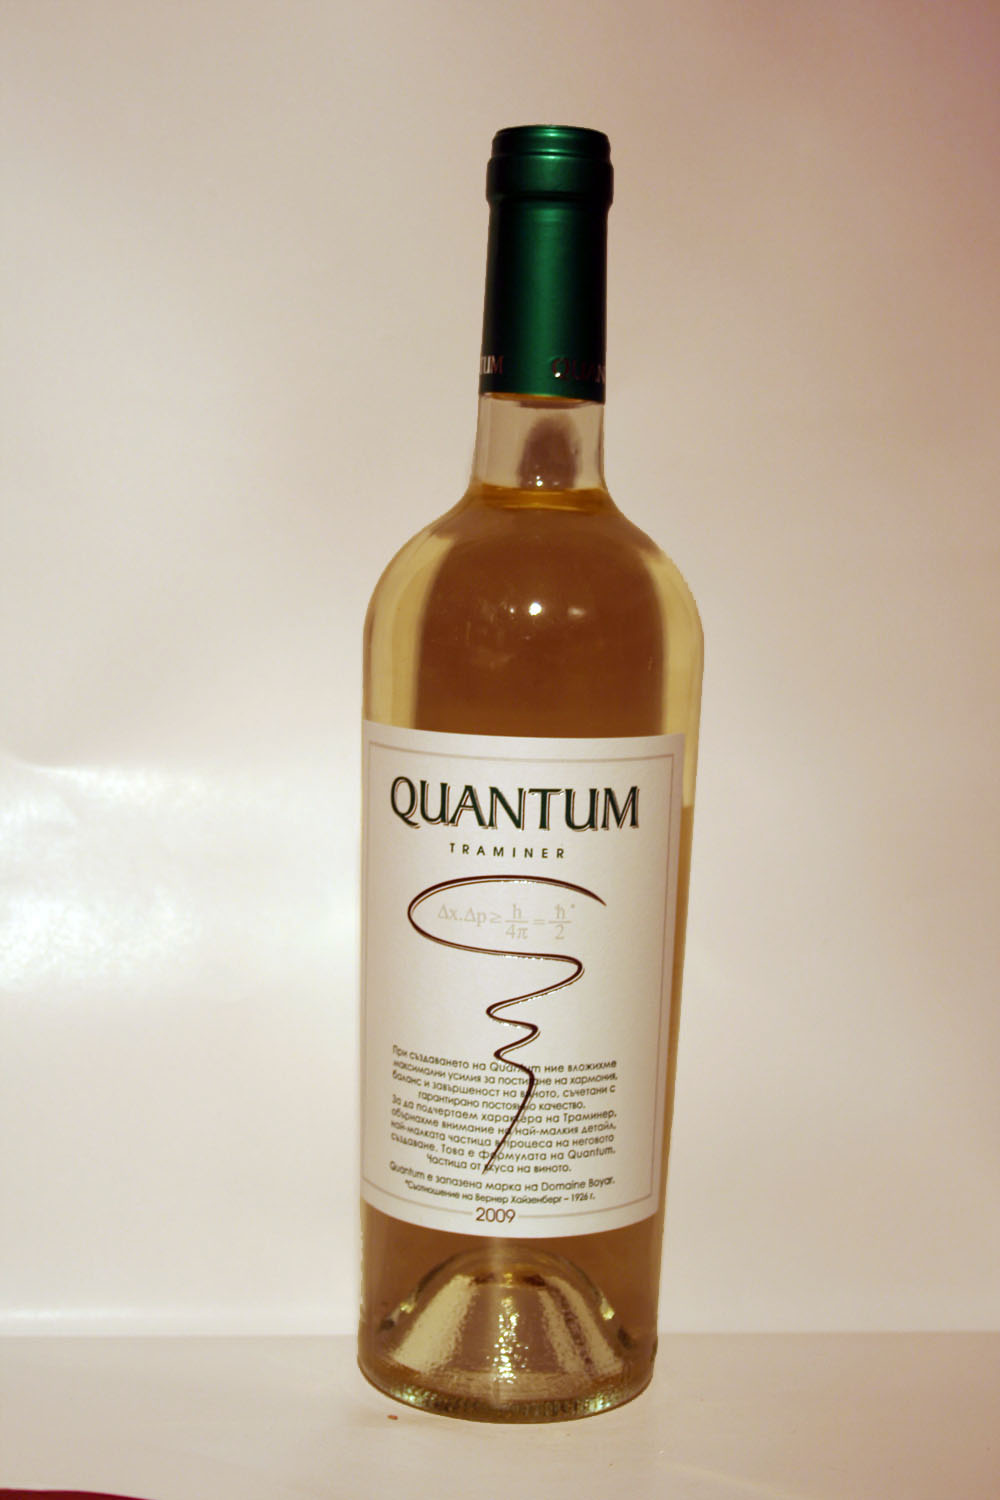 Quantum Traminer 2009